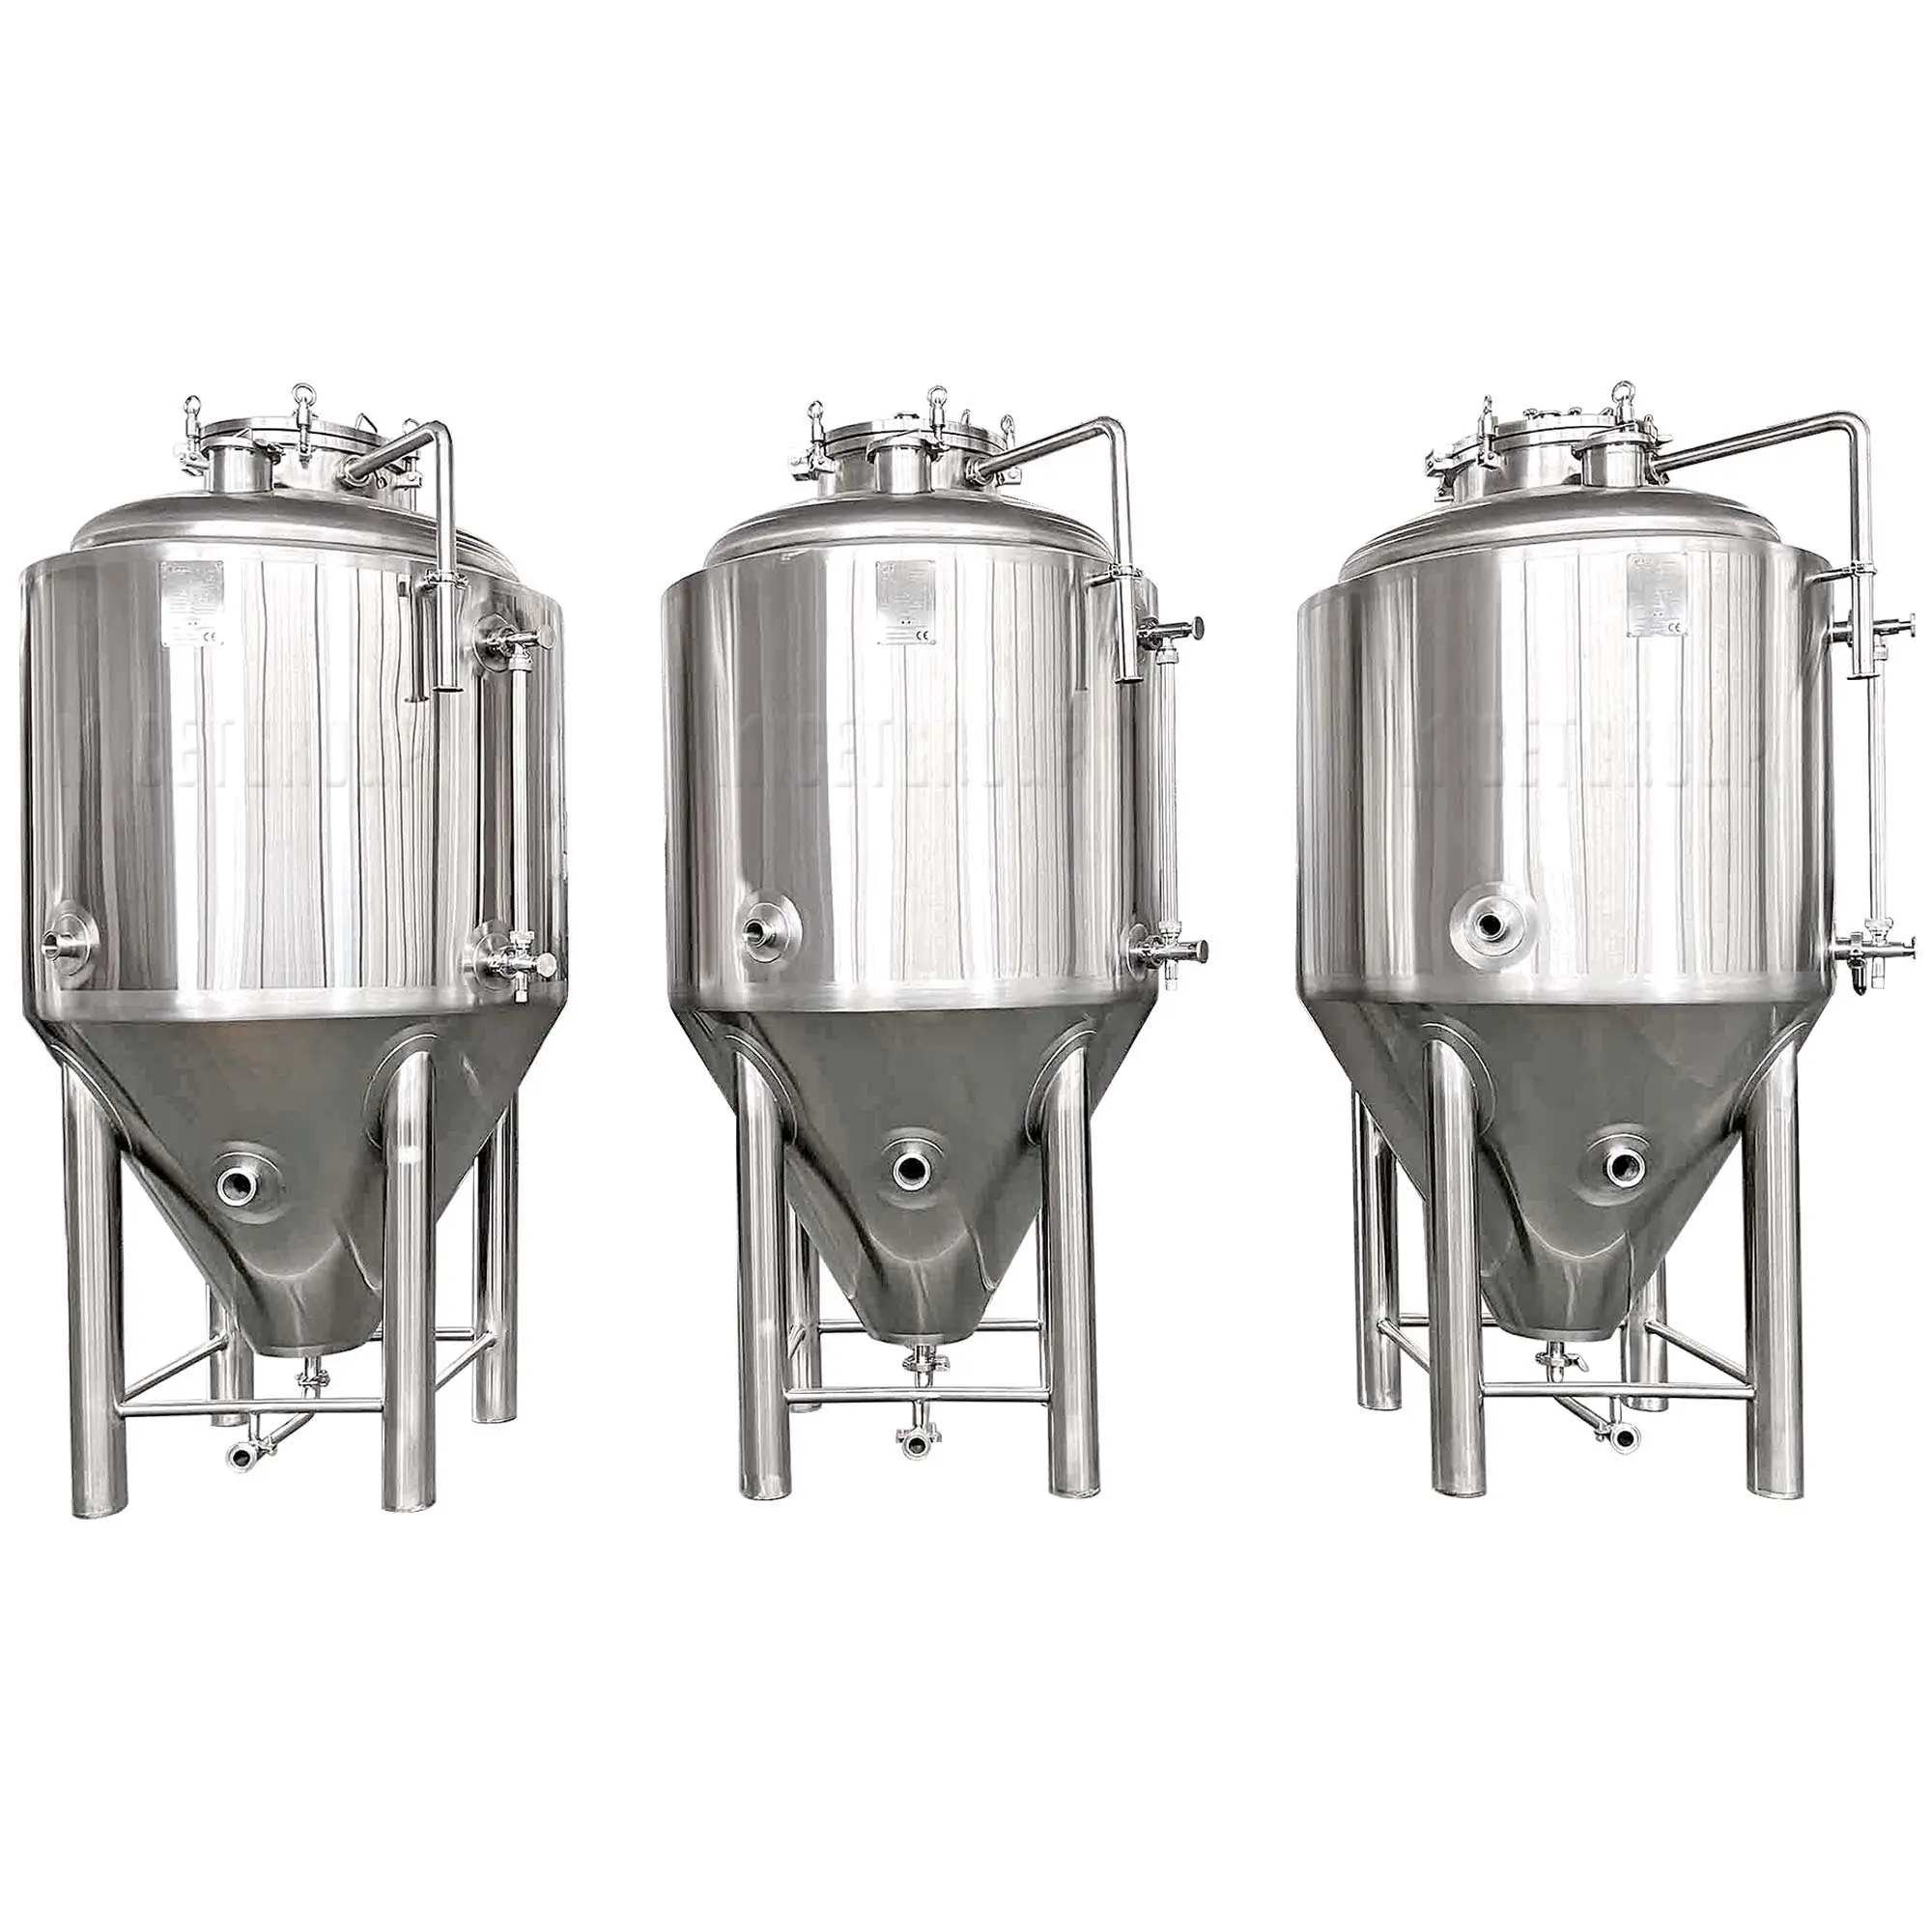 200Lマイクロ醸造所使用小型二重壁コニカルビール発酵タンクナノ発酵槽ステンレス鋼貯蔵タンク